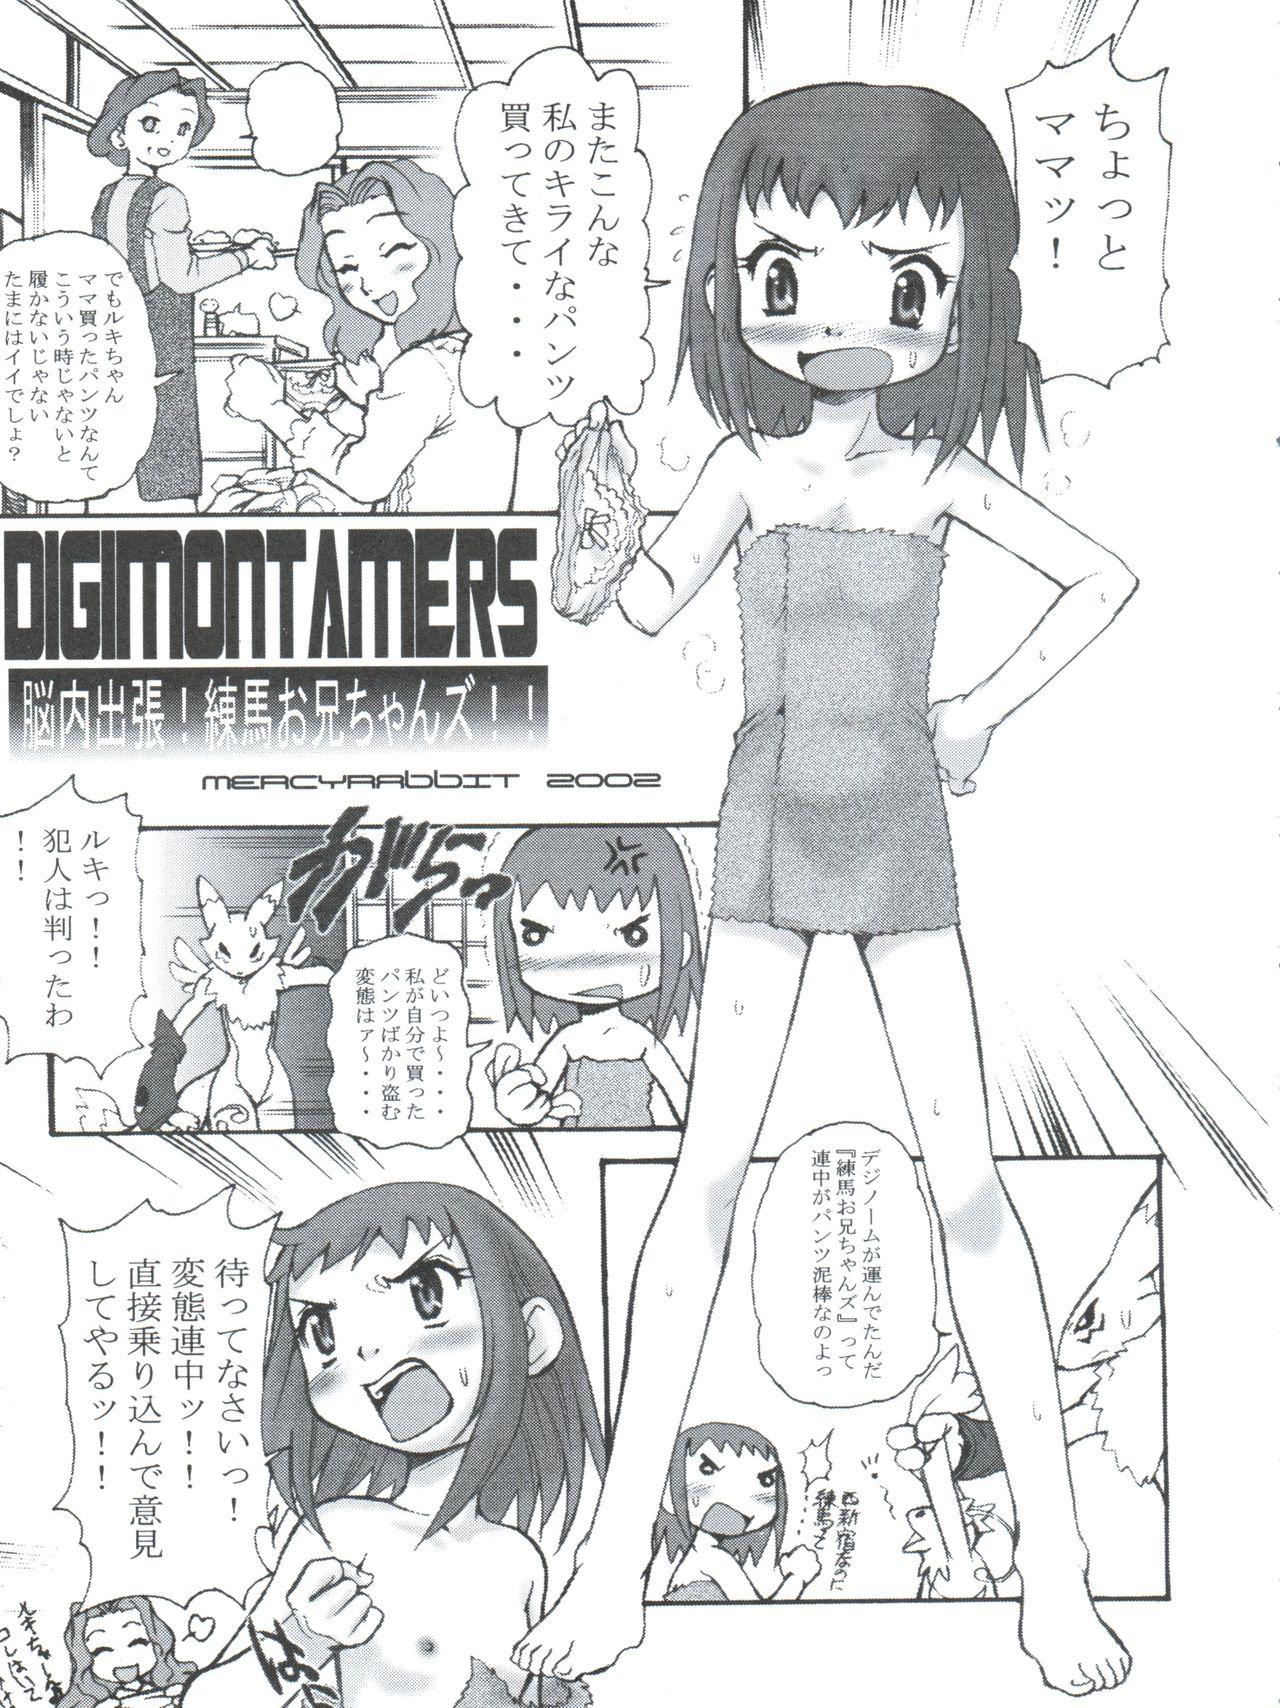 Ex Gf Digitama 04 FRONTIER - Digimon tamers Digimon frontier Interracial Porn - Page 5